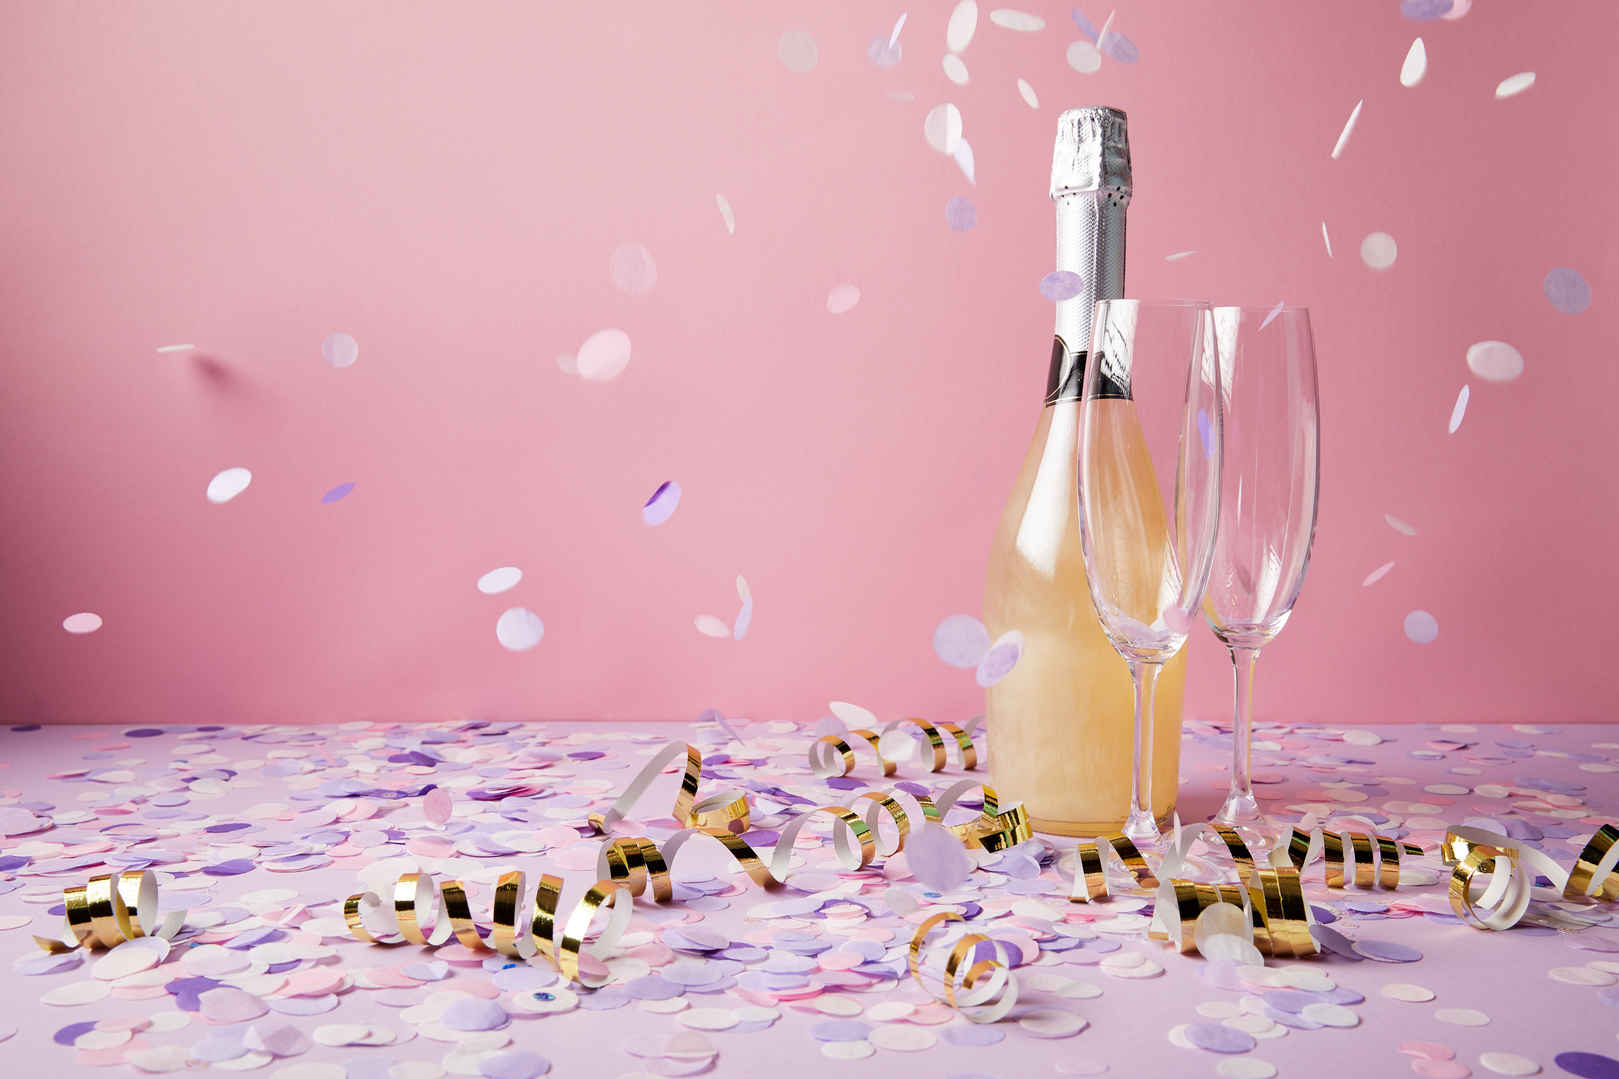 一瓶香槟和玻璃杯在紫罗兰表面上掉落着纸屑片